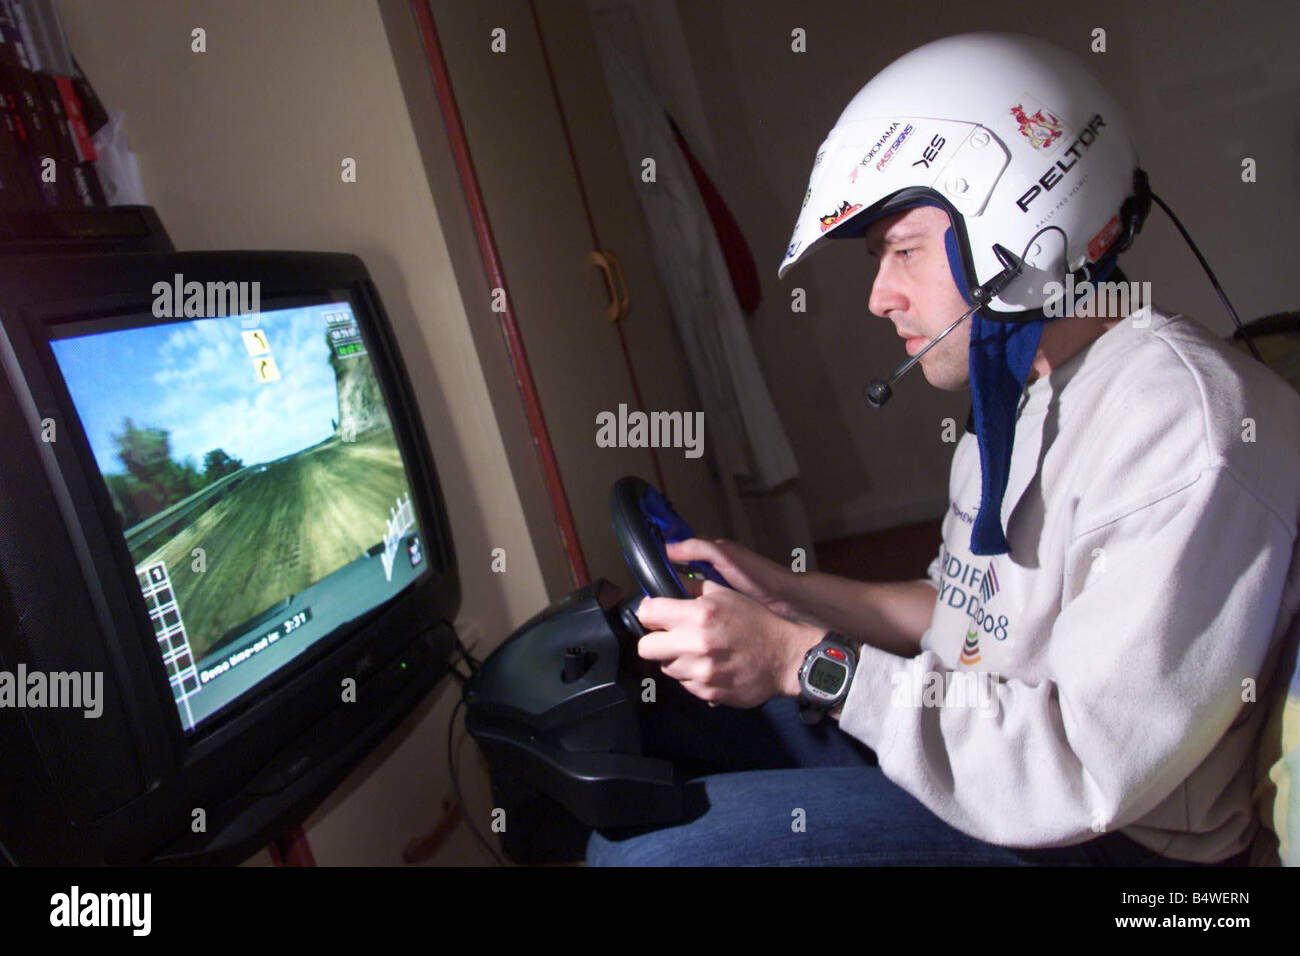 Rallye-Fahrer Richard Hopkins Oktober 2002, der gelernt hat, ein Rallye-Auto zu fahren, mithilfe einer Playstation, die er in seinen Jahren Netzwerk Q teilgenommen werden wird Rallye Mirrorpix Stockfoto